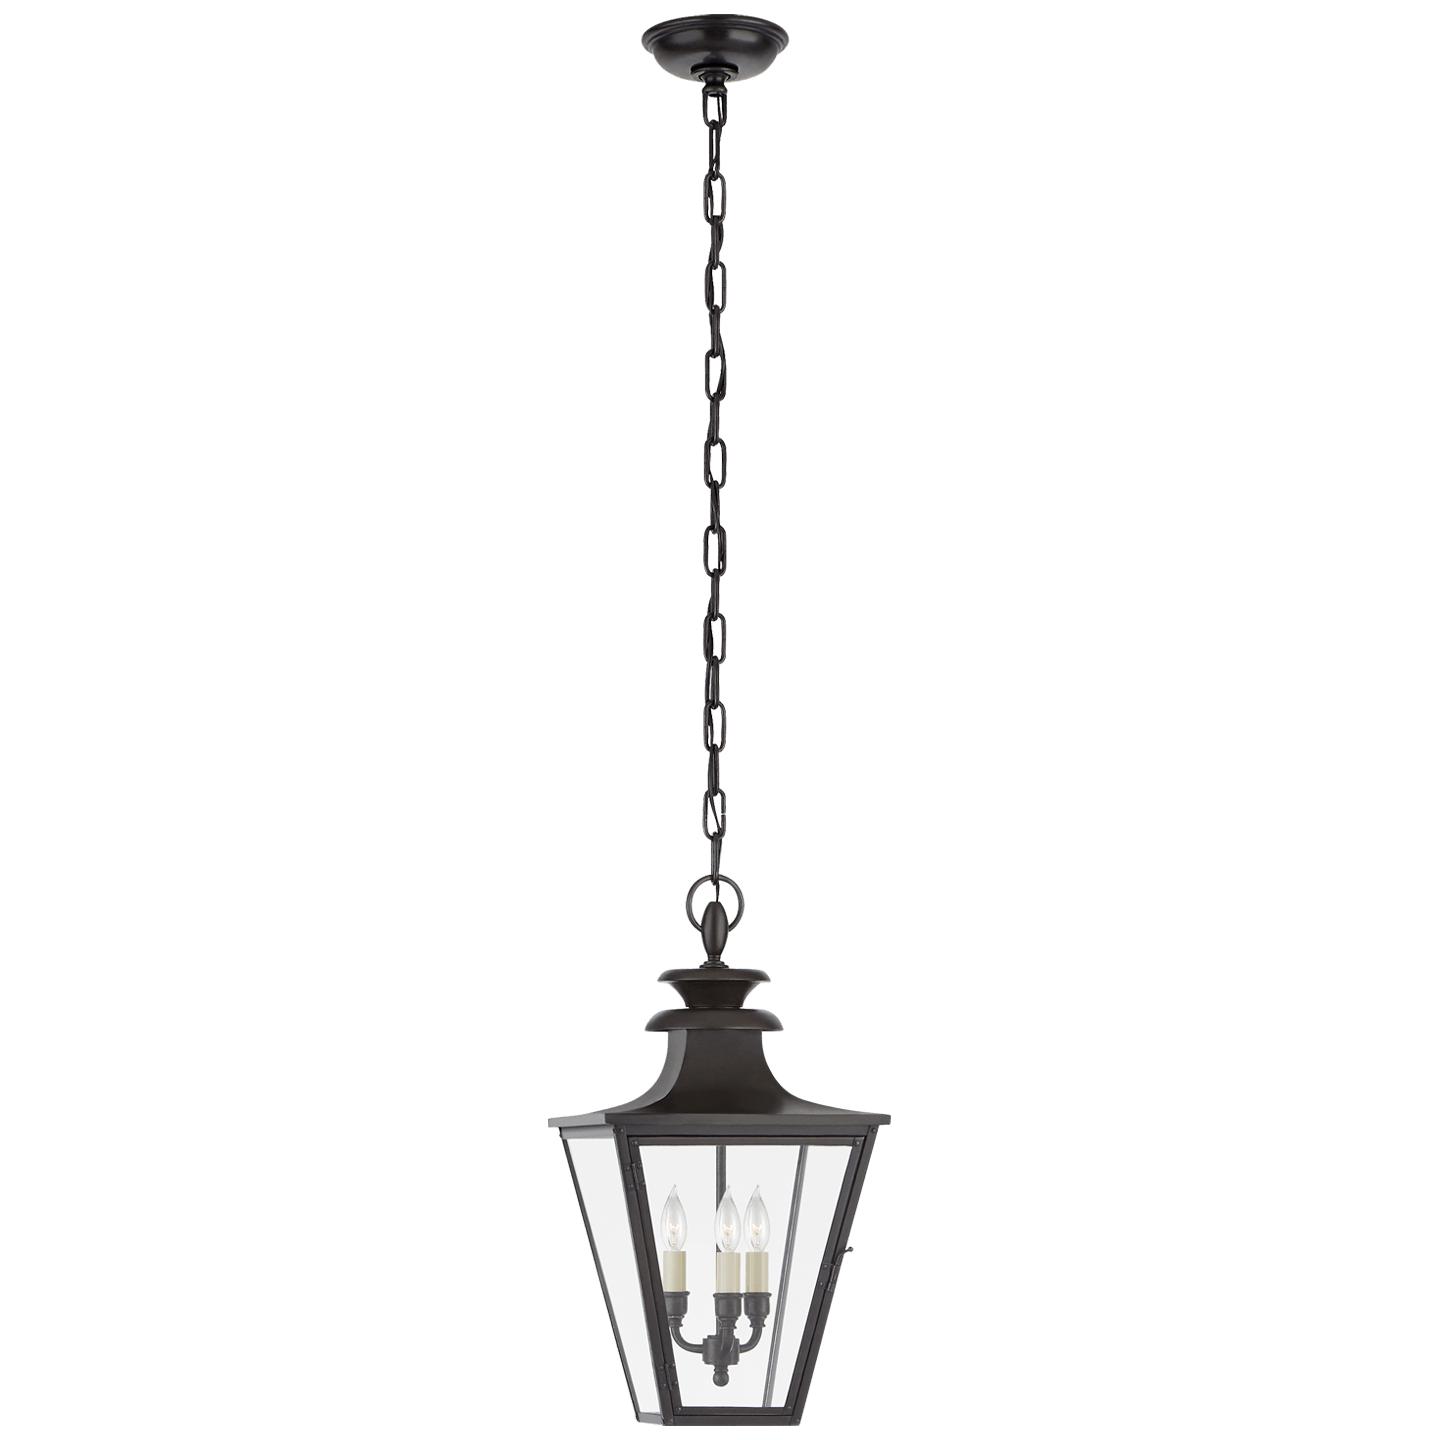 Купить Подвесной светильник Albermarle Small Hanging Lantern в интернет-магазине roooms.ru